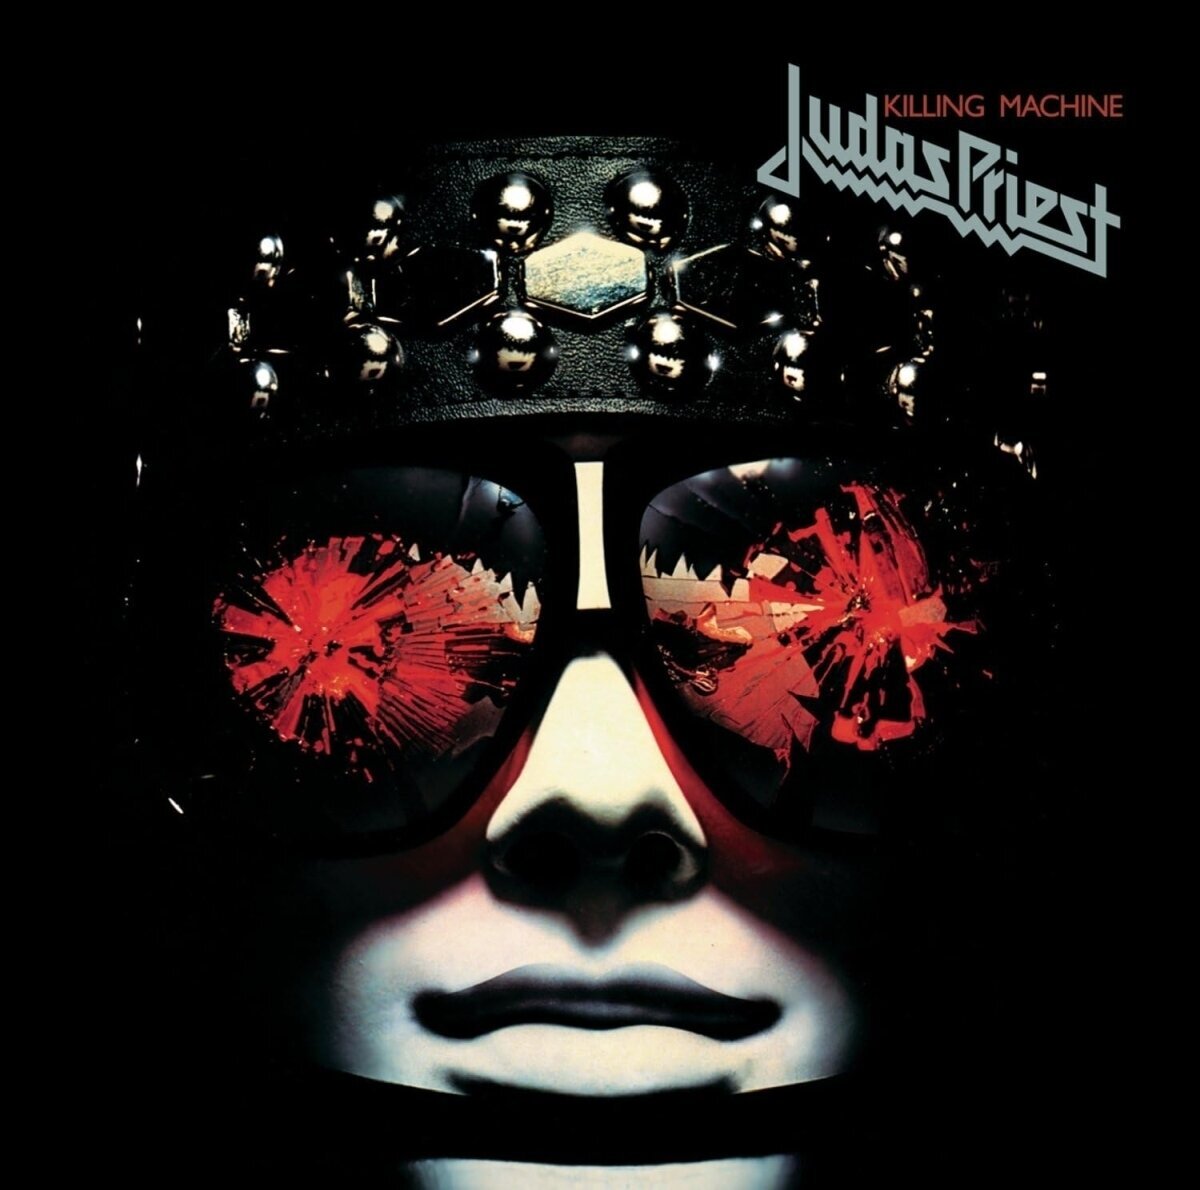 CD de música Judas Priest - Killing Machine (Remastered) (CD)